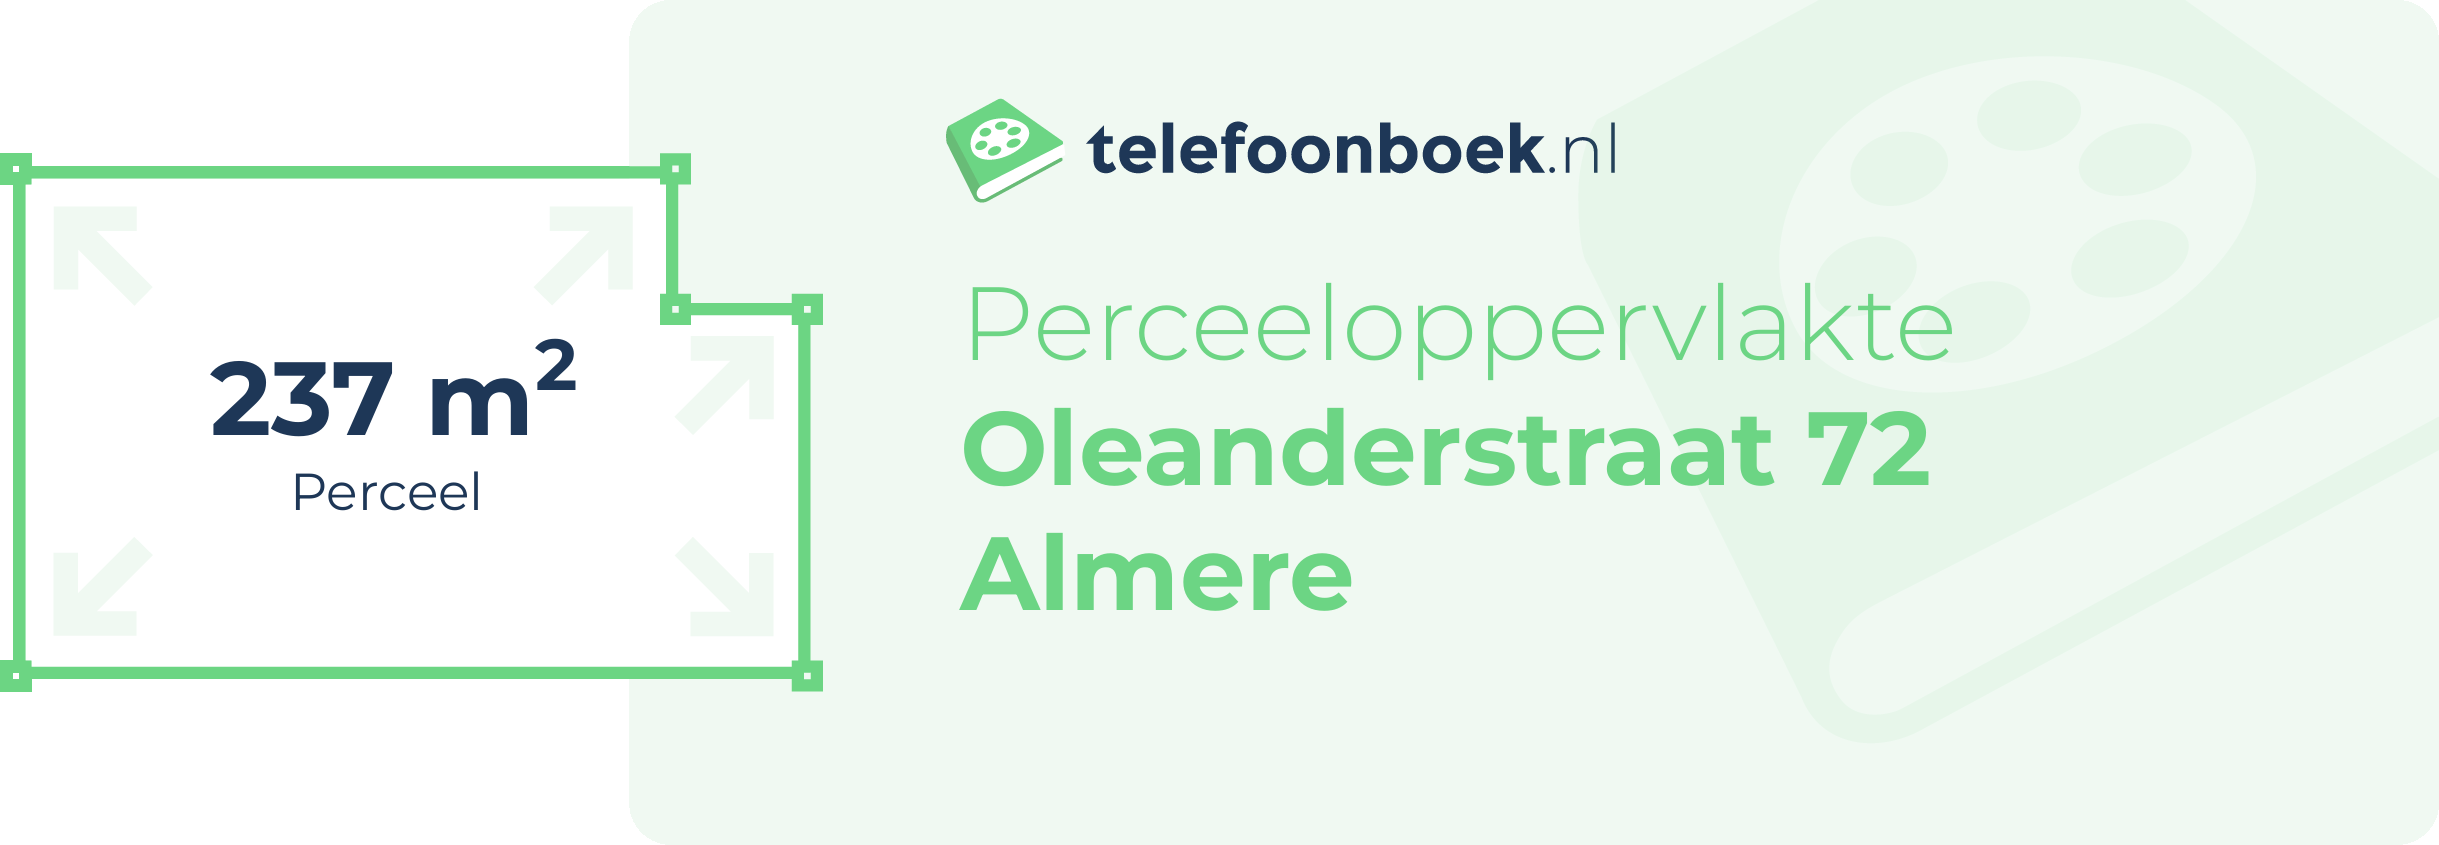 Perceeloppervlakte Oleanderstraat 72 Almere